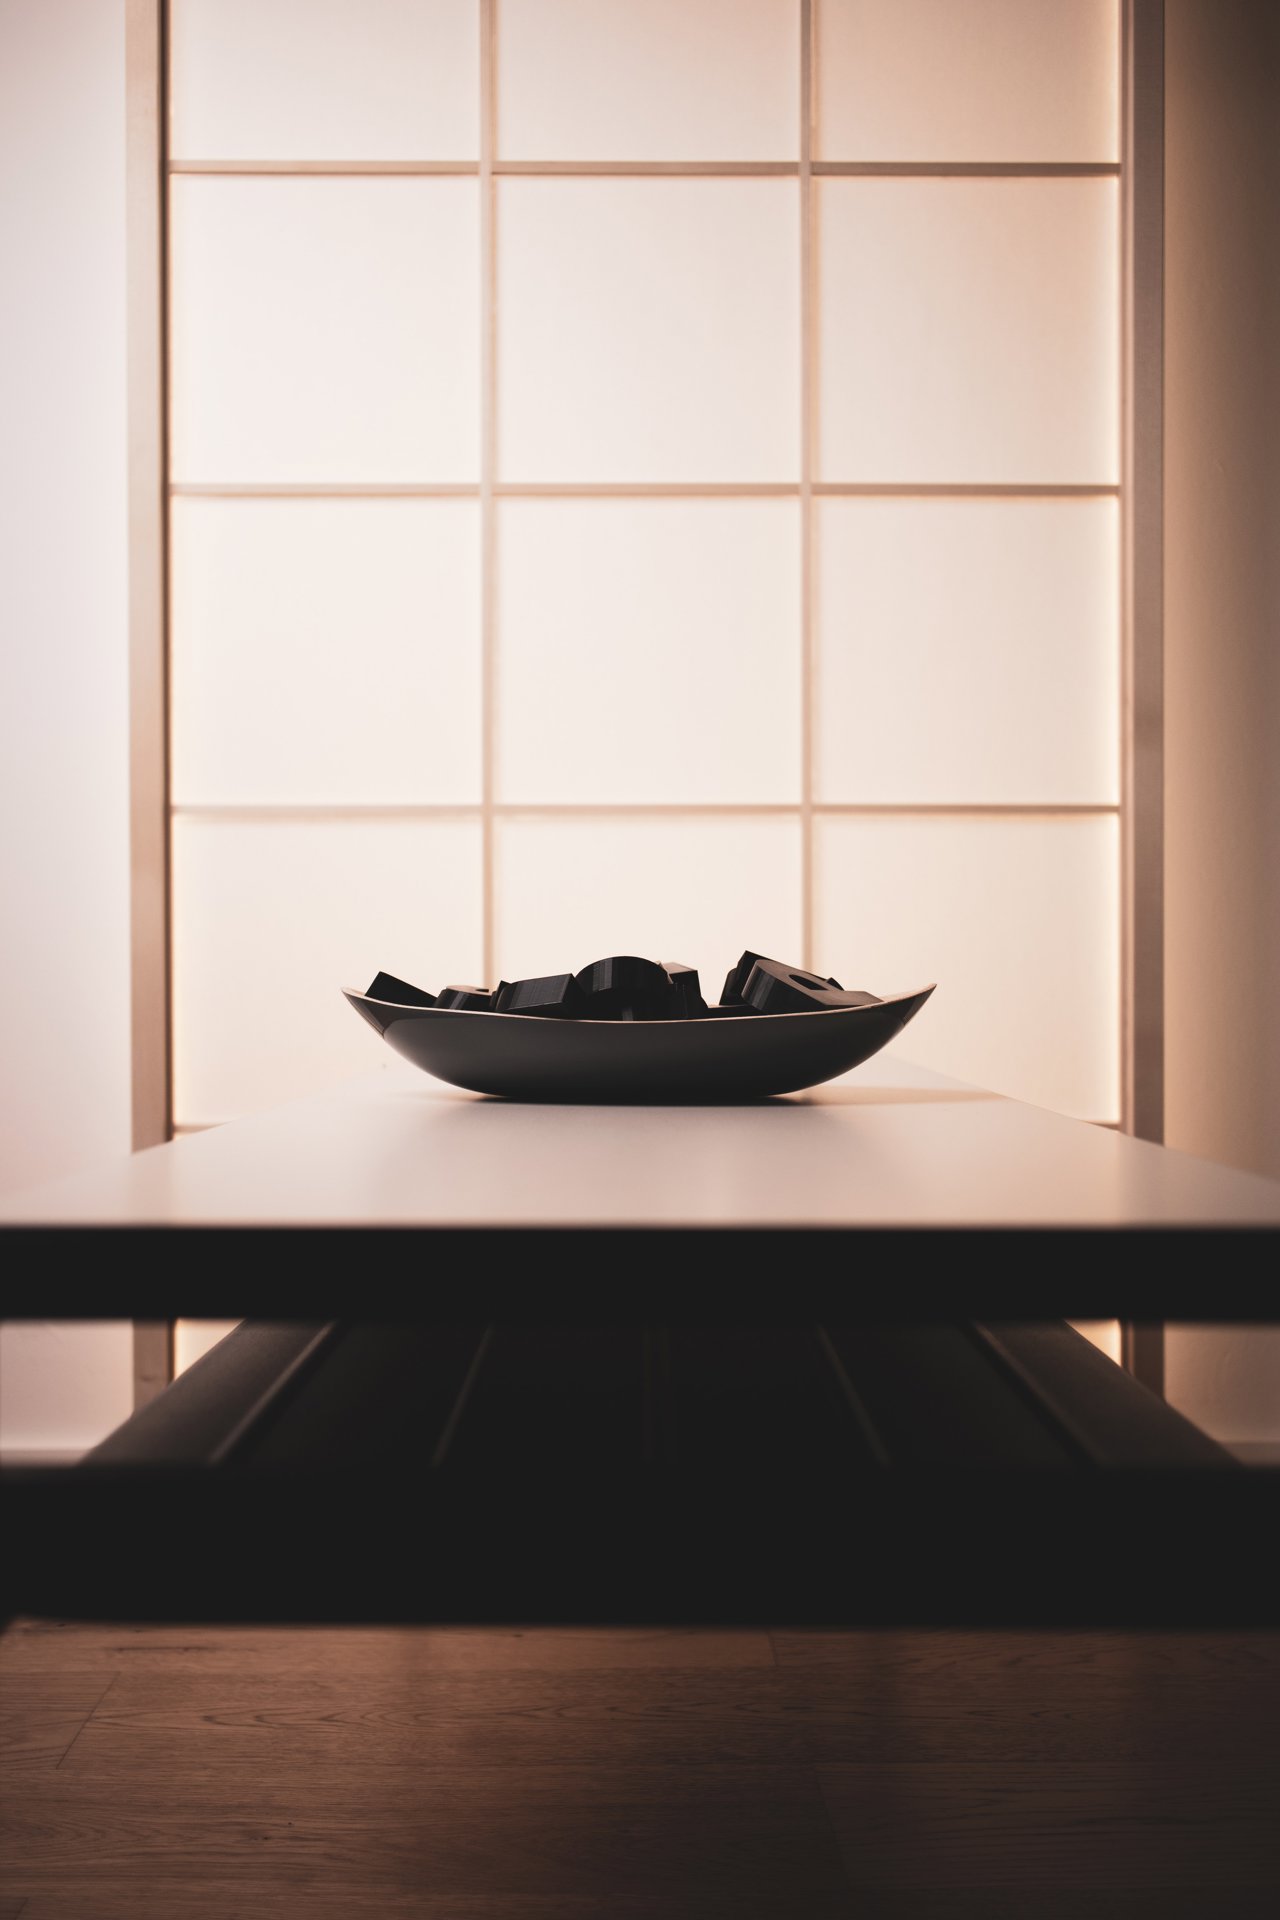 Además de como puertas correderas, los paneles Shoji pueden funcionar como ventanas, dejando pasar la luz y creando privacidad.